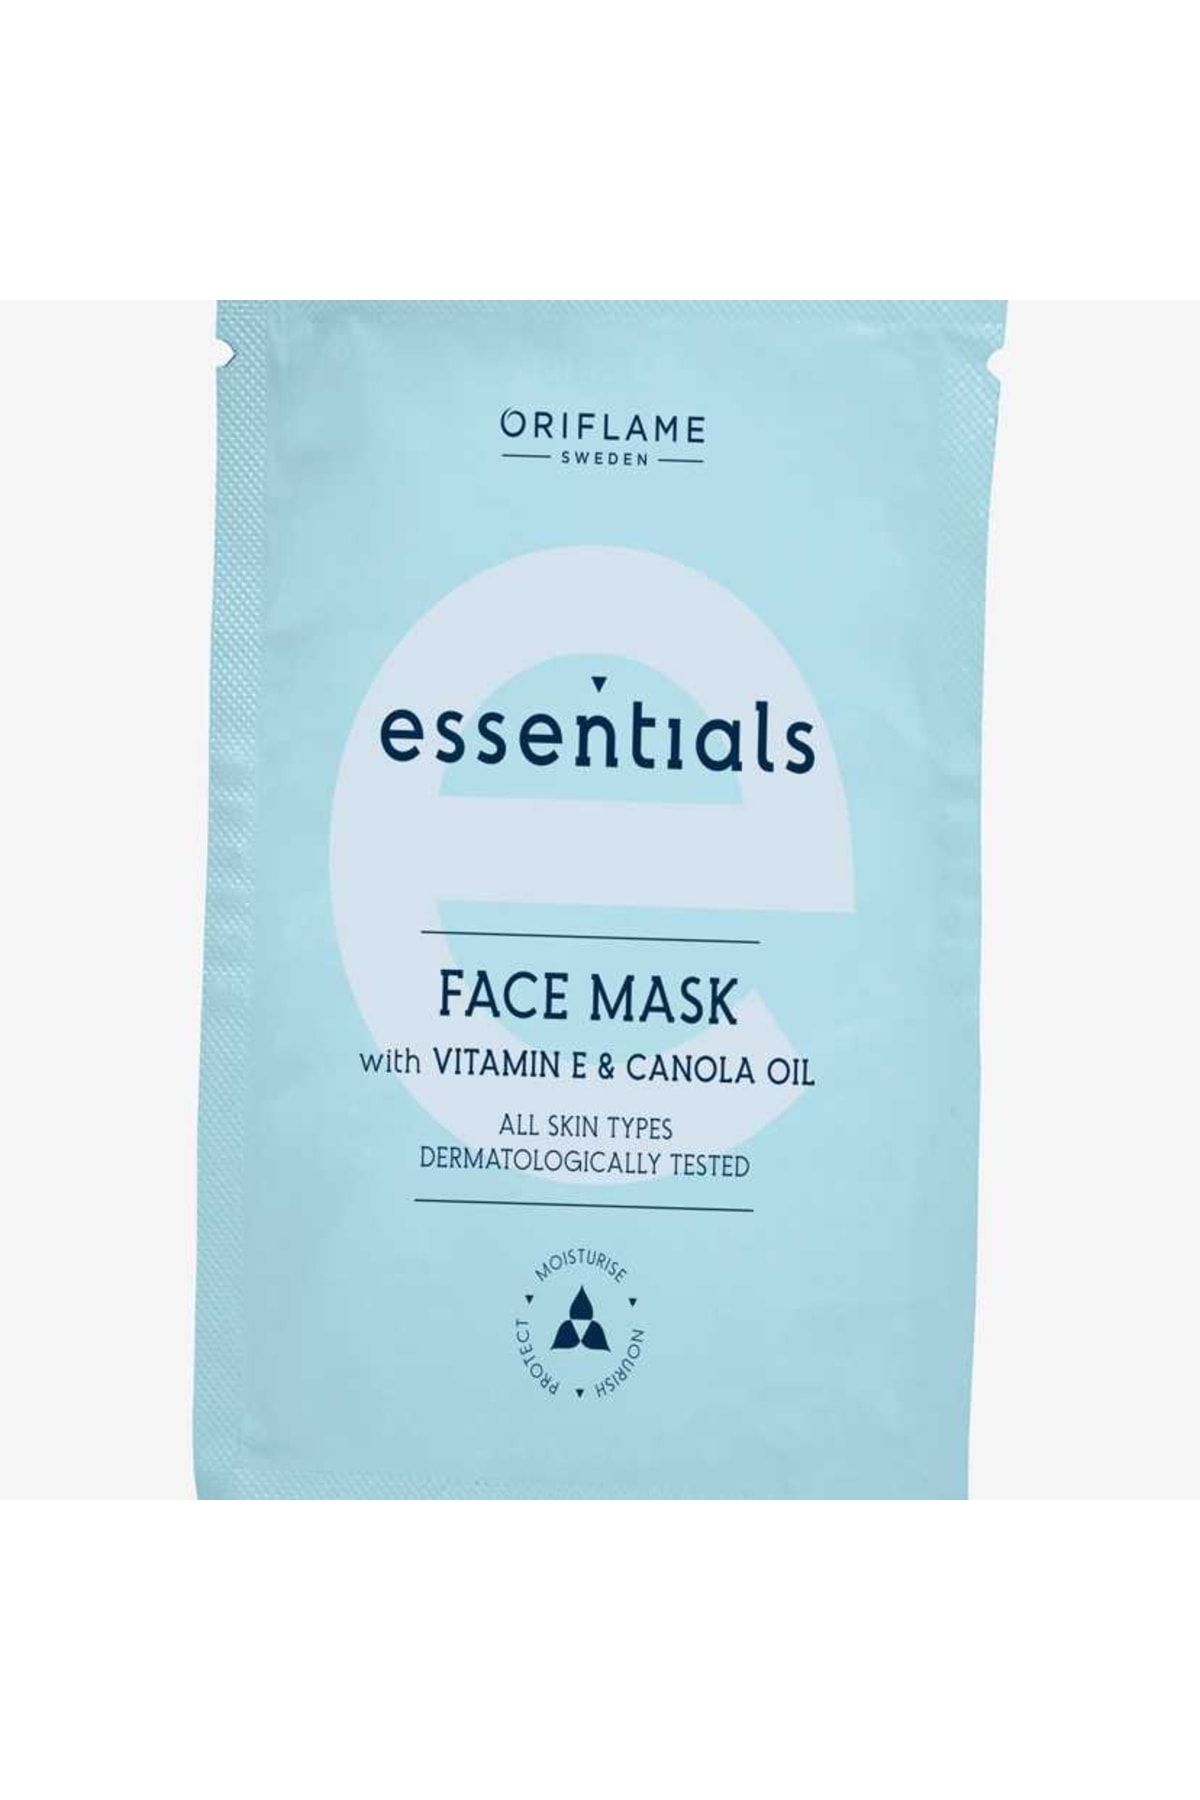 Oriflame E Vitaminli & Kanola Yağlı Paraben Içermeyen Yüz Maskesi